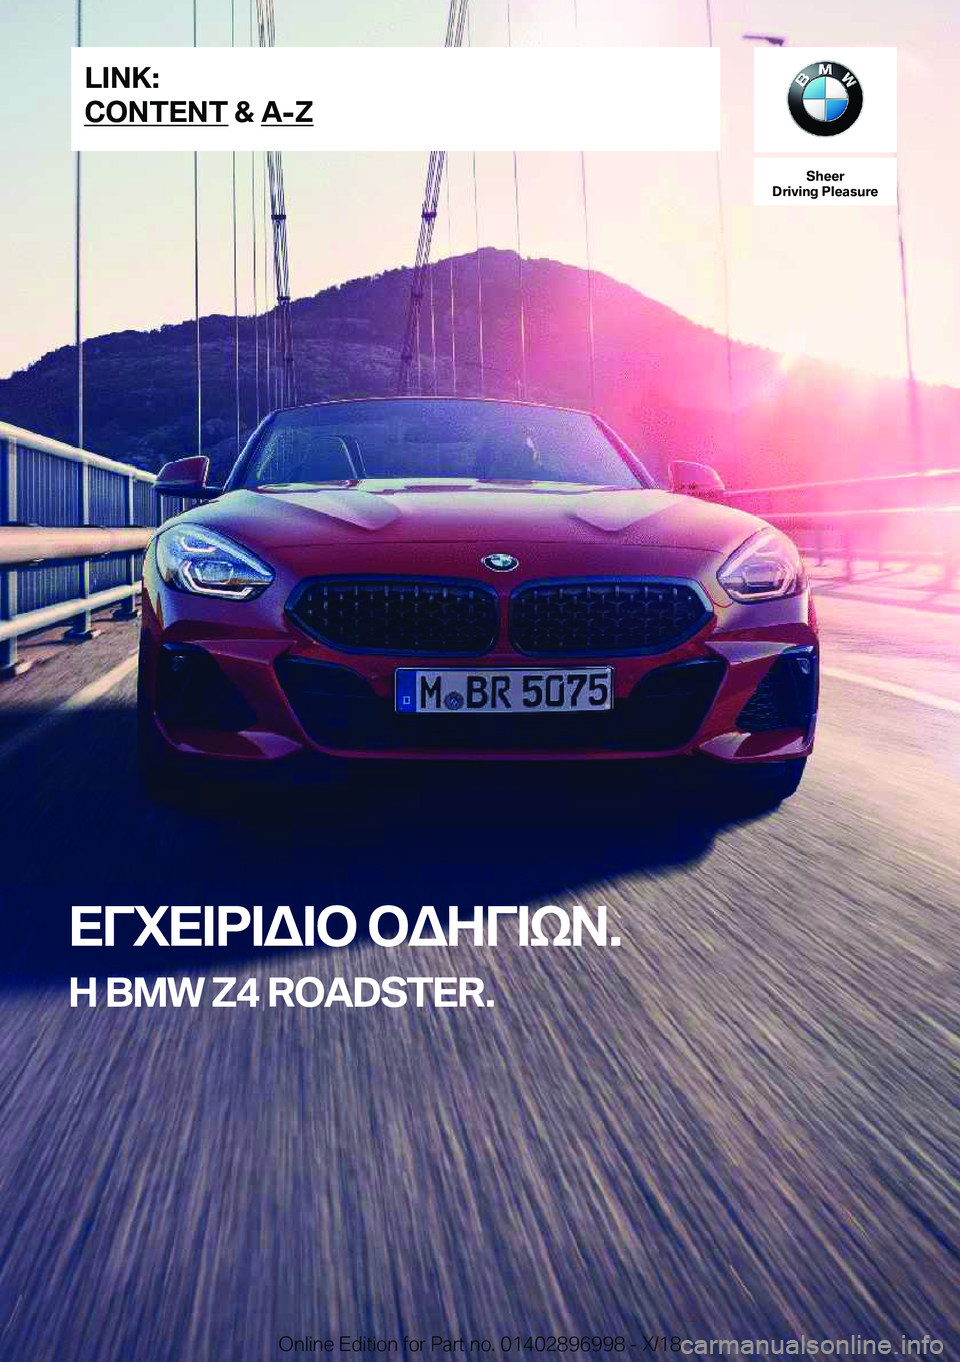 BMW Z4 2019  ΟΔΗΓΌΣ ΧΡΉΣΗΣ (in Greek) �S�h�e�e�r
�D�r�i�v�i�n�g��P�l�e�a�s�u�r�e
XViX=d=W=b�bWZV=kA�.
�H��B�M�W��Z�4��R�O�A�D�S�T�E�R�.�L�I�N�K�:
�C�O�N�T�E�N�T��&��A�-�Z�O�n�l�i�n�e��E�d�i�t�i�o�n��f�o�r��P�a�r